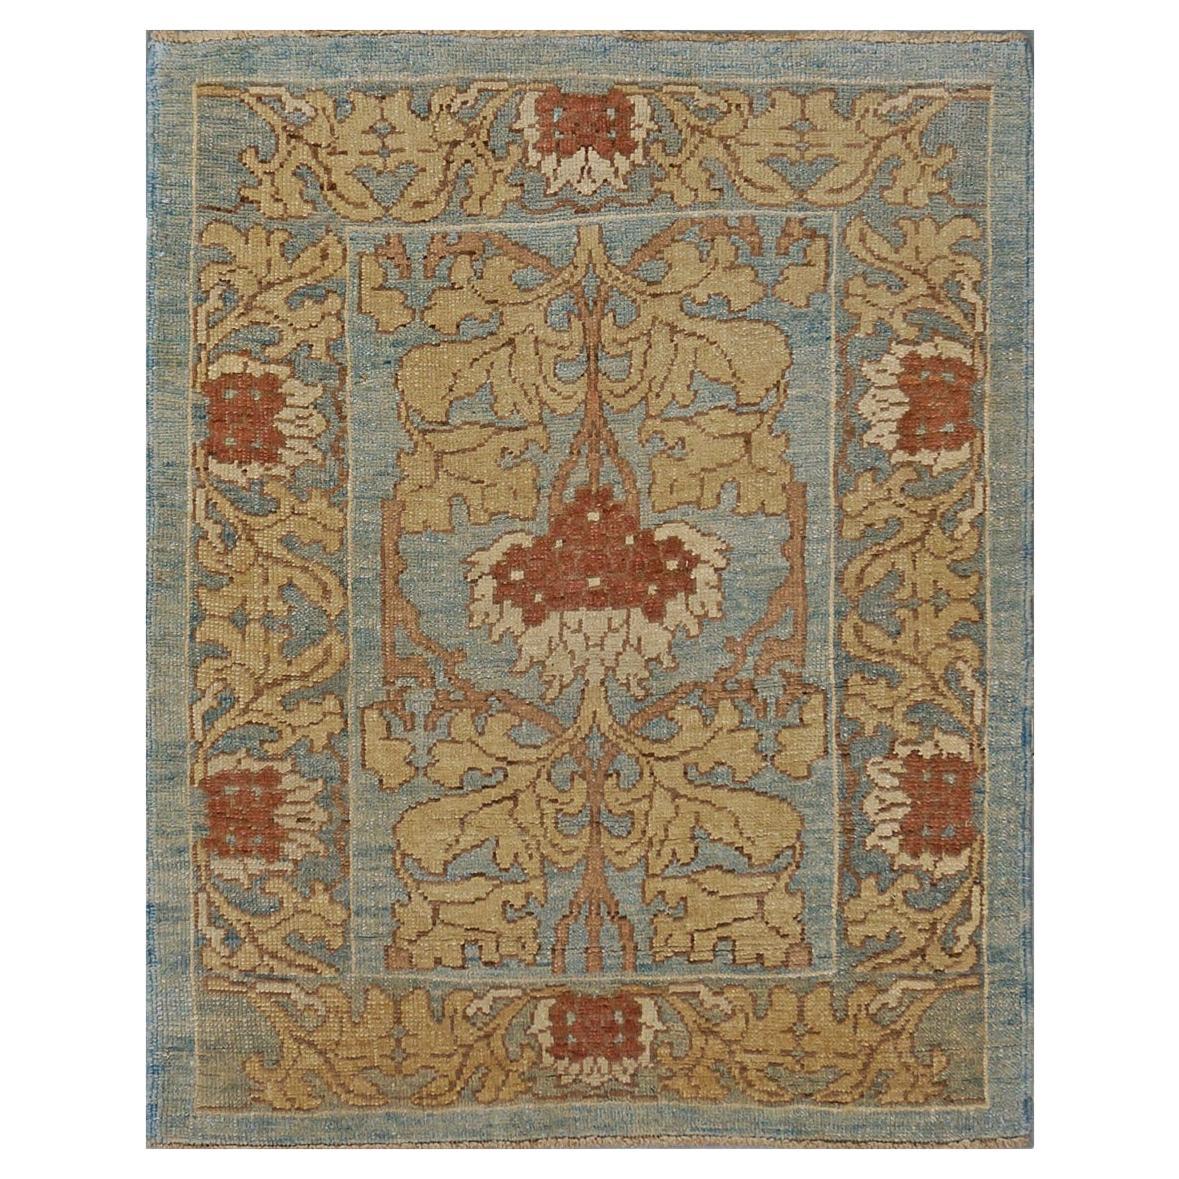 21st Century William Morris Donegal Carpet 4.4x5.7 Light Blue, Tan, & Rust